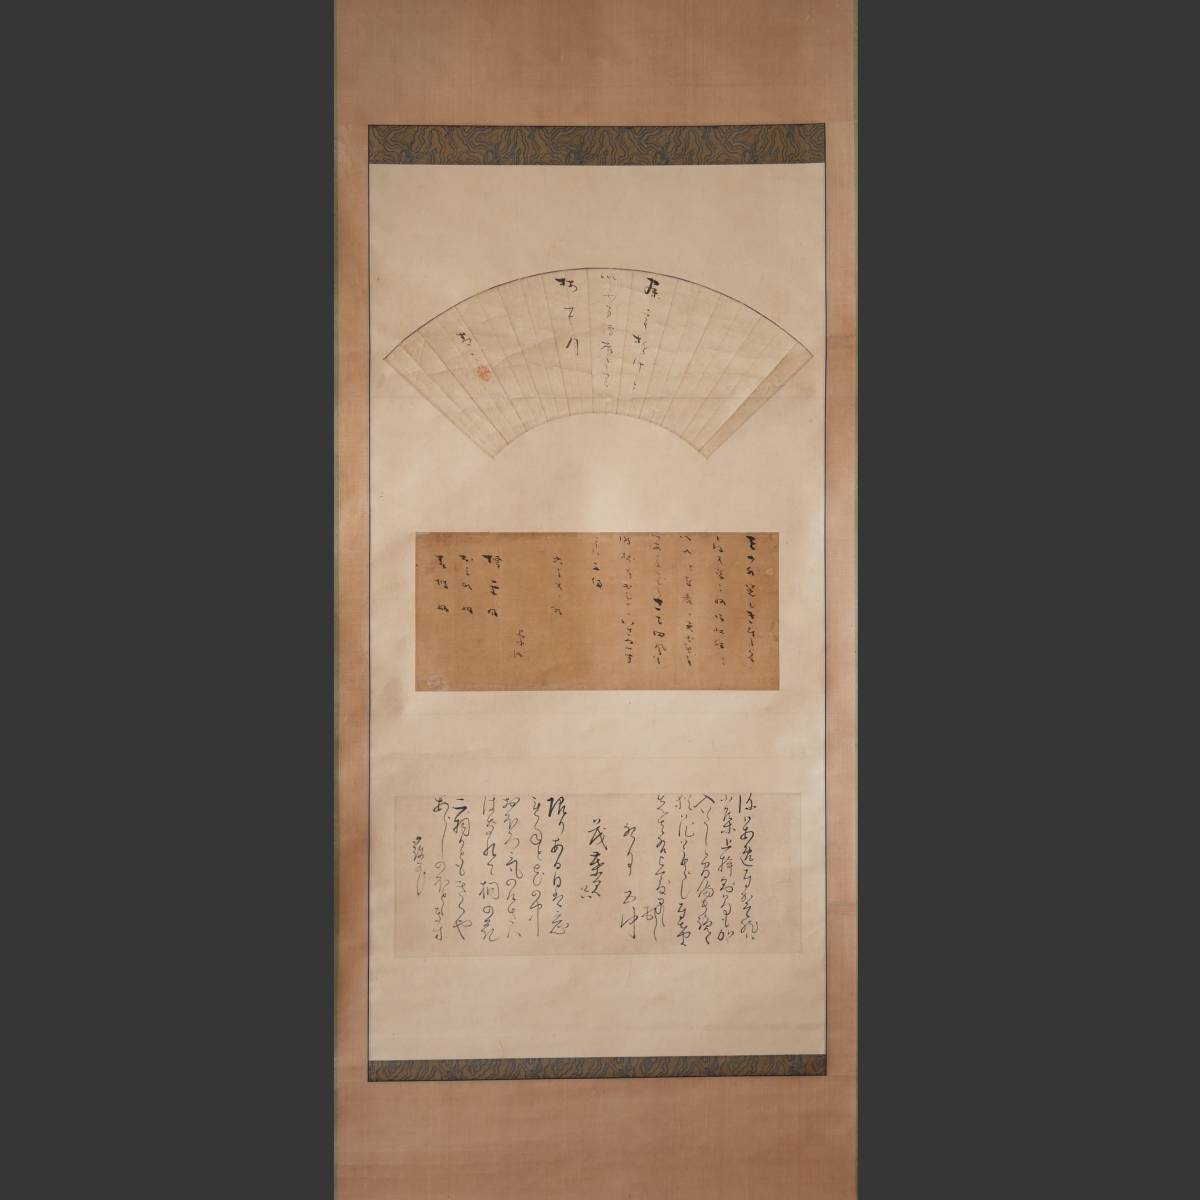 Autenticidad garantizada ◆ [Takuike Tsuruta] Pergamino colgante Periodo Edo tardío Caligrafía Pintura Arte antiguo Nacido en la prefectura de Aichi 15-11, cuadro, pintura japonesa, otros